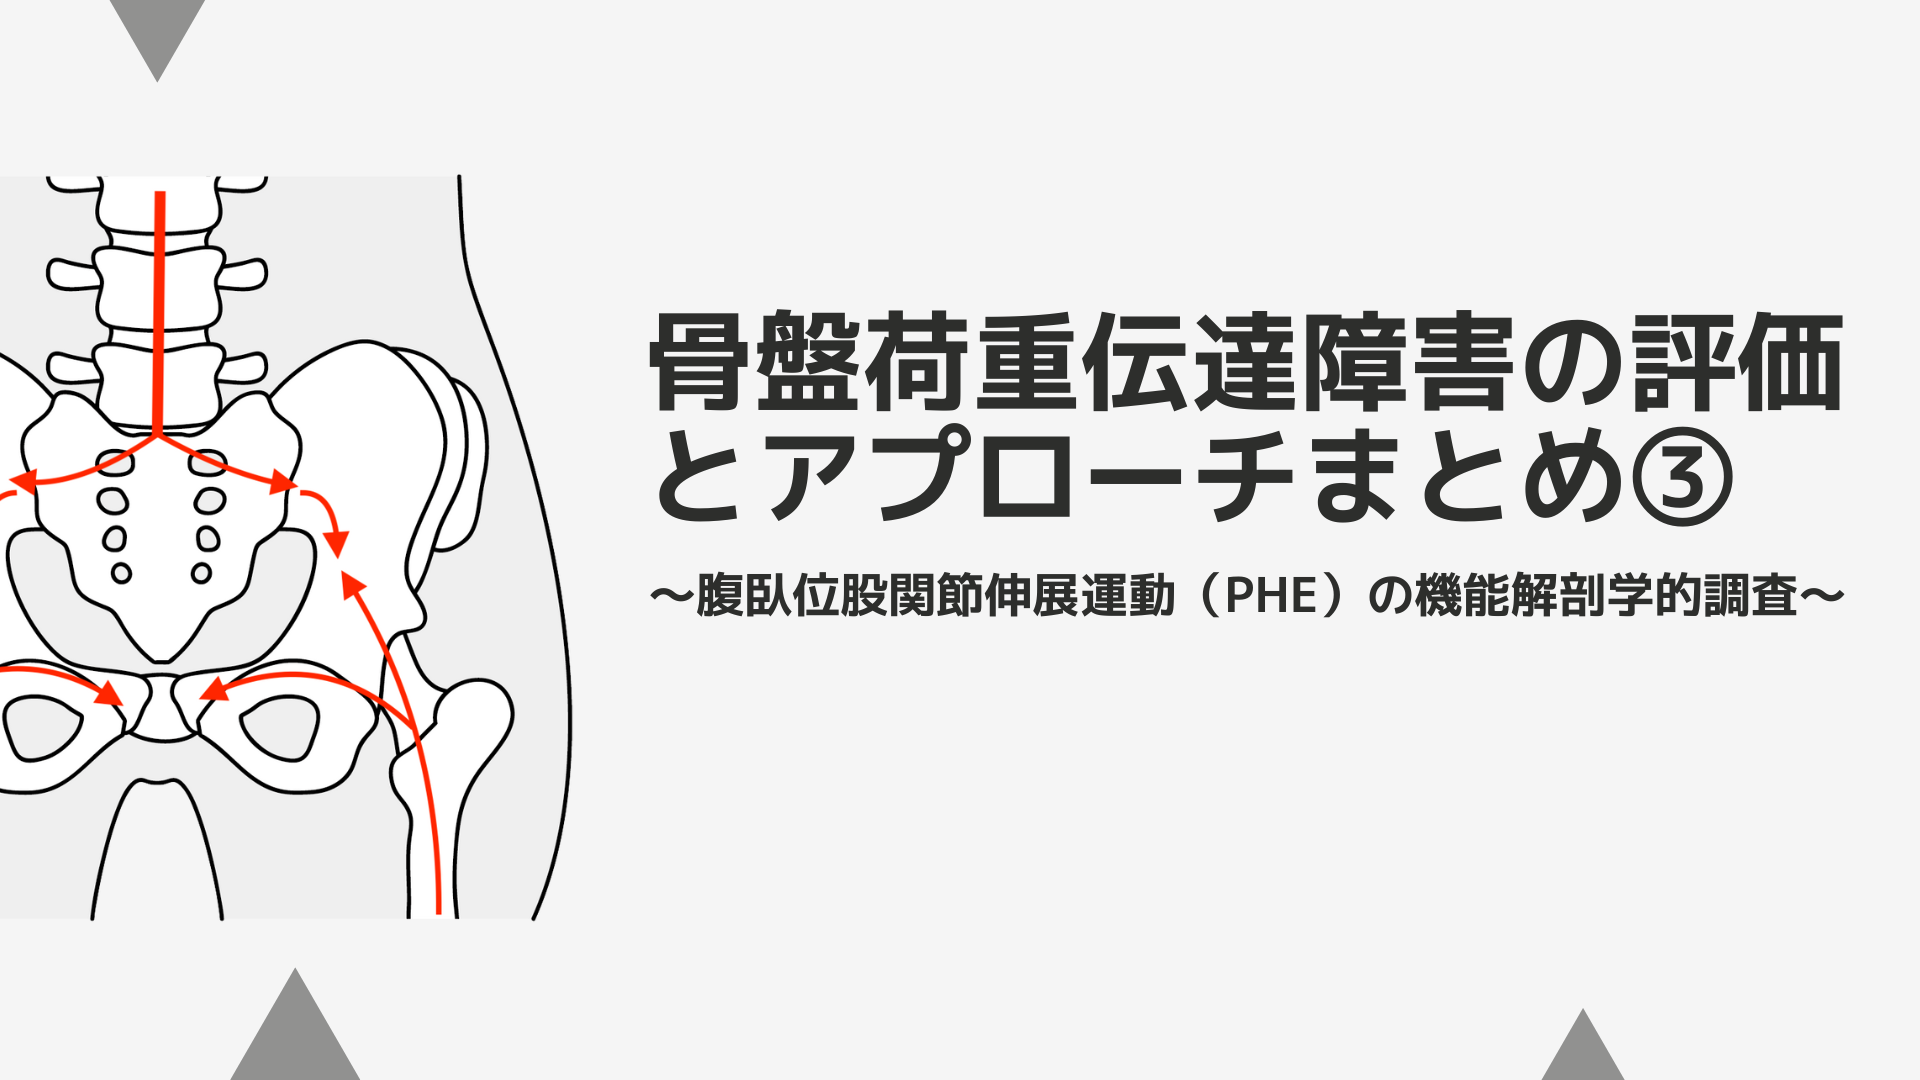 骨盤荷重伝達障害の評価とアプローチまとめ③〜腹臥位股関節伸展運動（PHE）の機能解剖学的調査〜